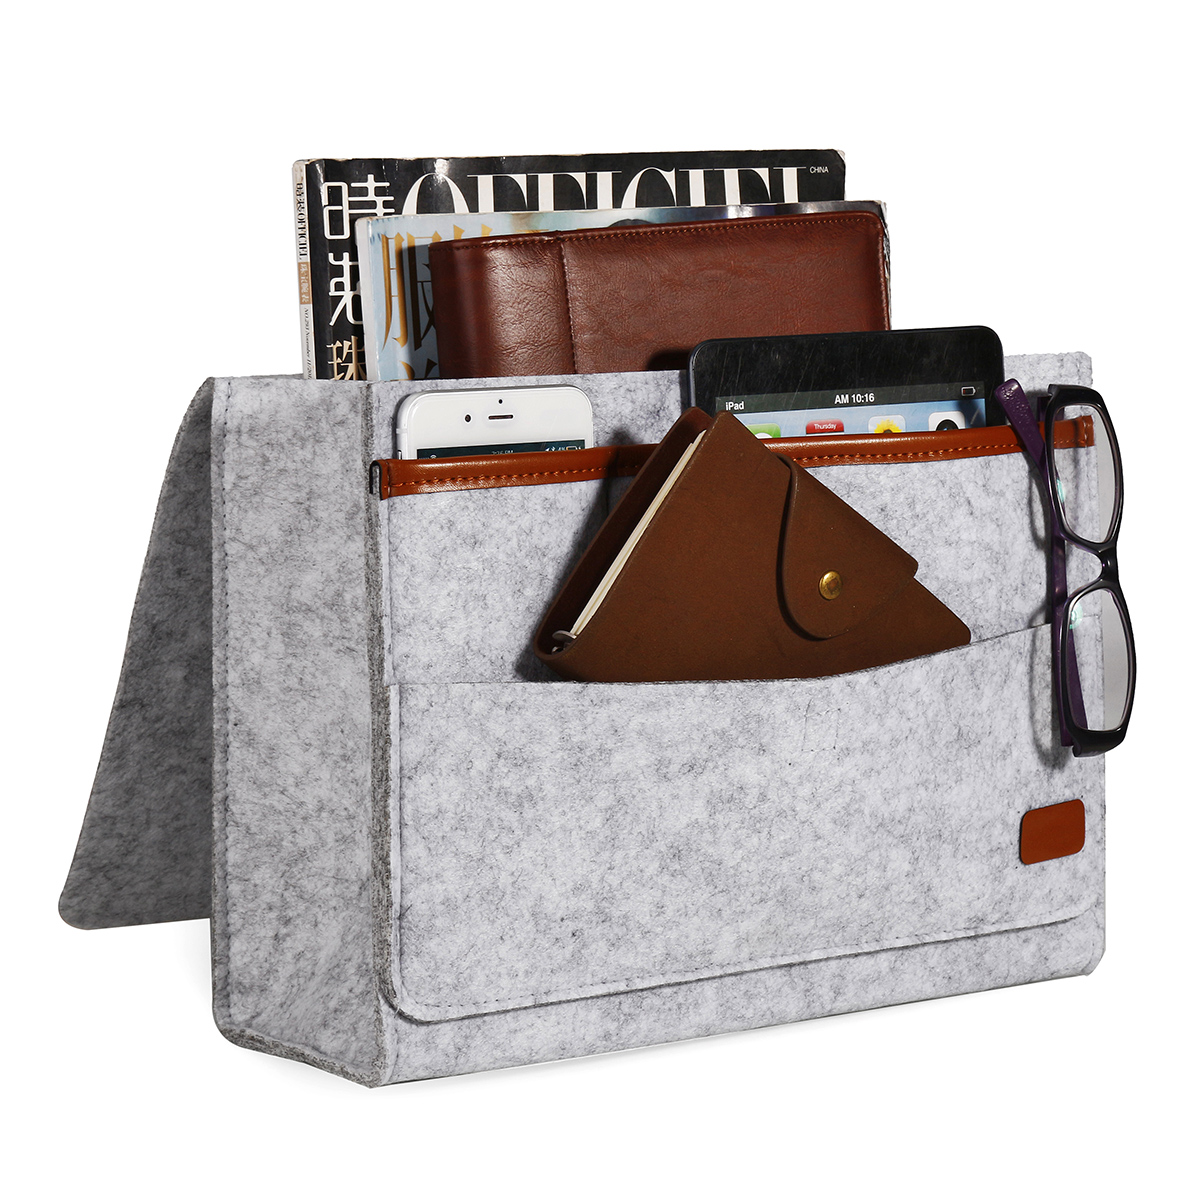 Bedside-Pocket-Storage-Baskets-Hanging-Bag-Felt-Sofa-Phone-Book-Organizer-Remote-Home-Holder-1360407-5